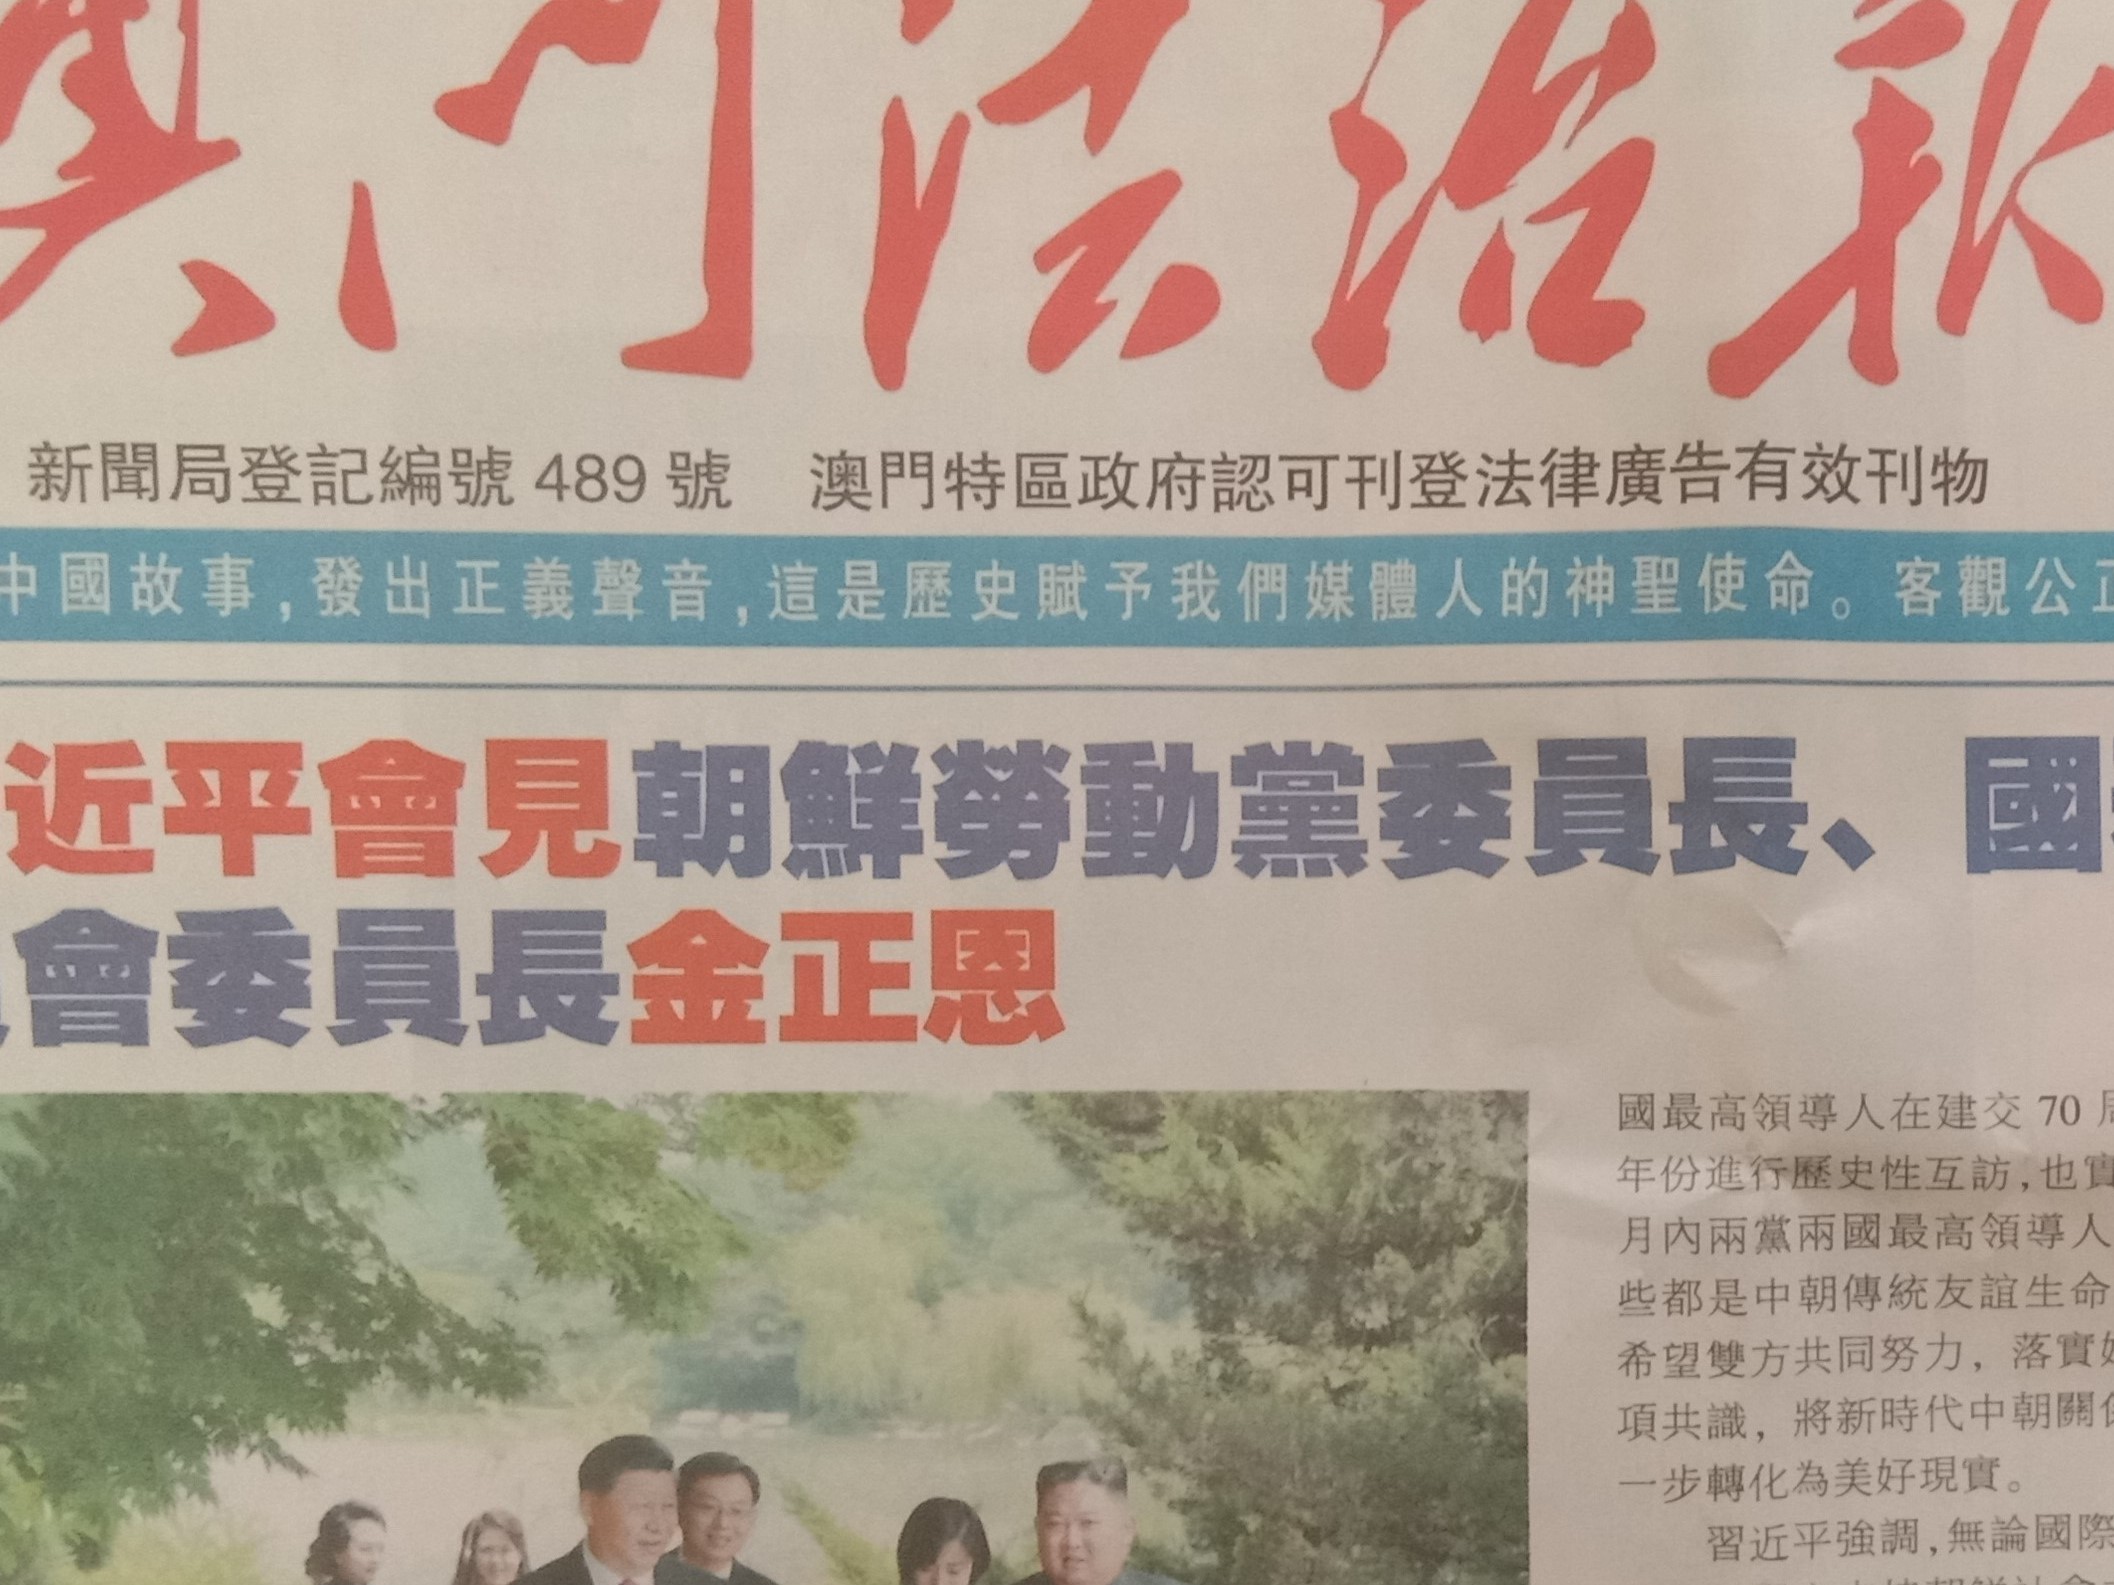 中国小记者学院将在澳门建立分院